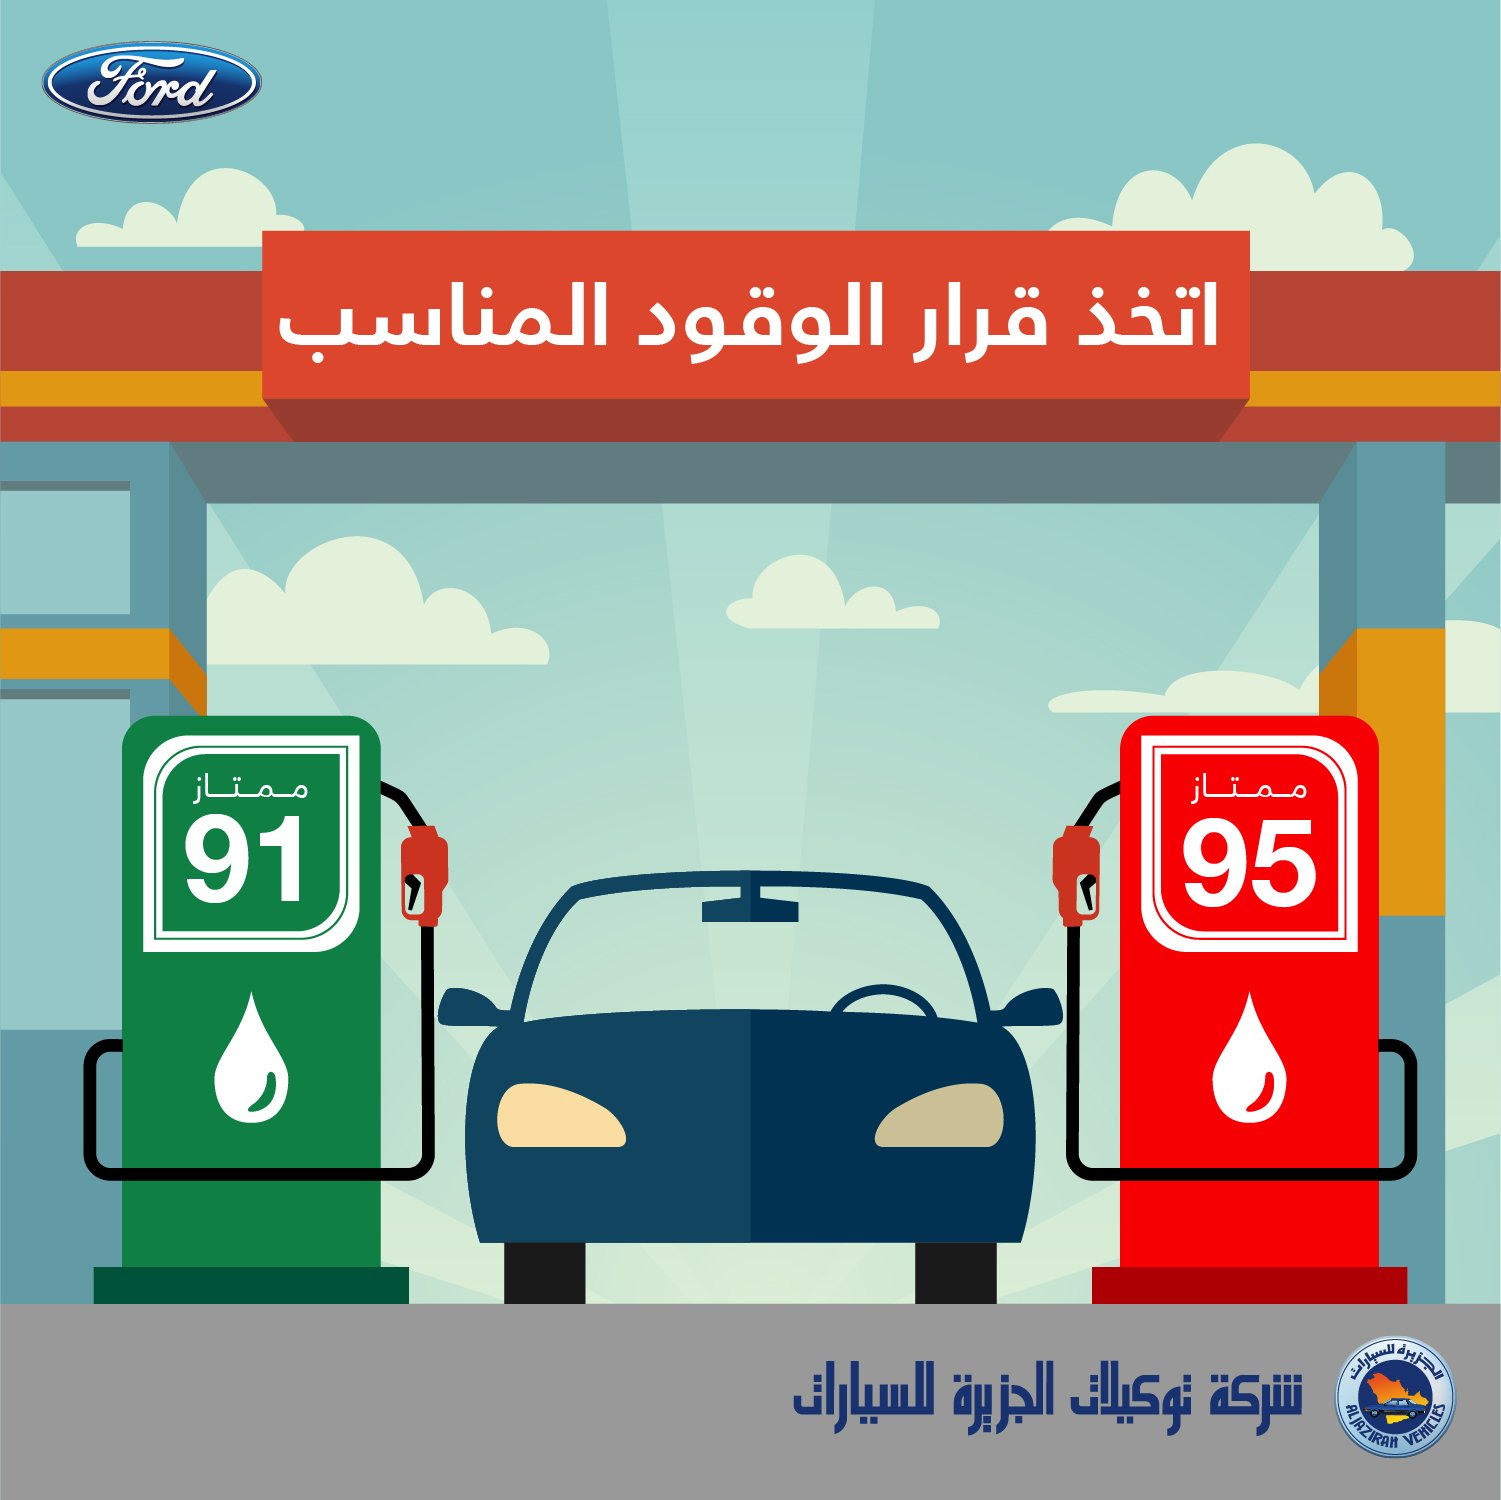 توكيلات الجزيرة - فورد السعودية on Twitter: "استخدم نوع الوقود الأنسب  لسيارتك لتحصل على الأداء الأفضل للمحرك وتتجنب أي مشاكل أنت بغنى عنها. اعرف  النوع الأنسب لسيارتك من خلال الرجوع لكتيب الصيانة